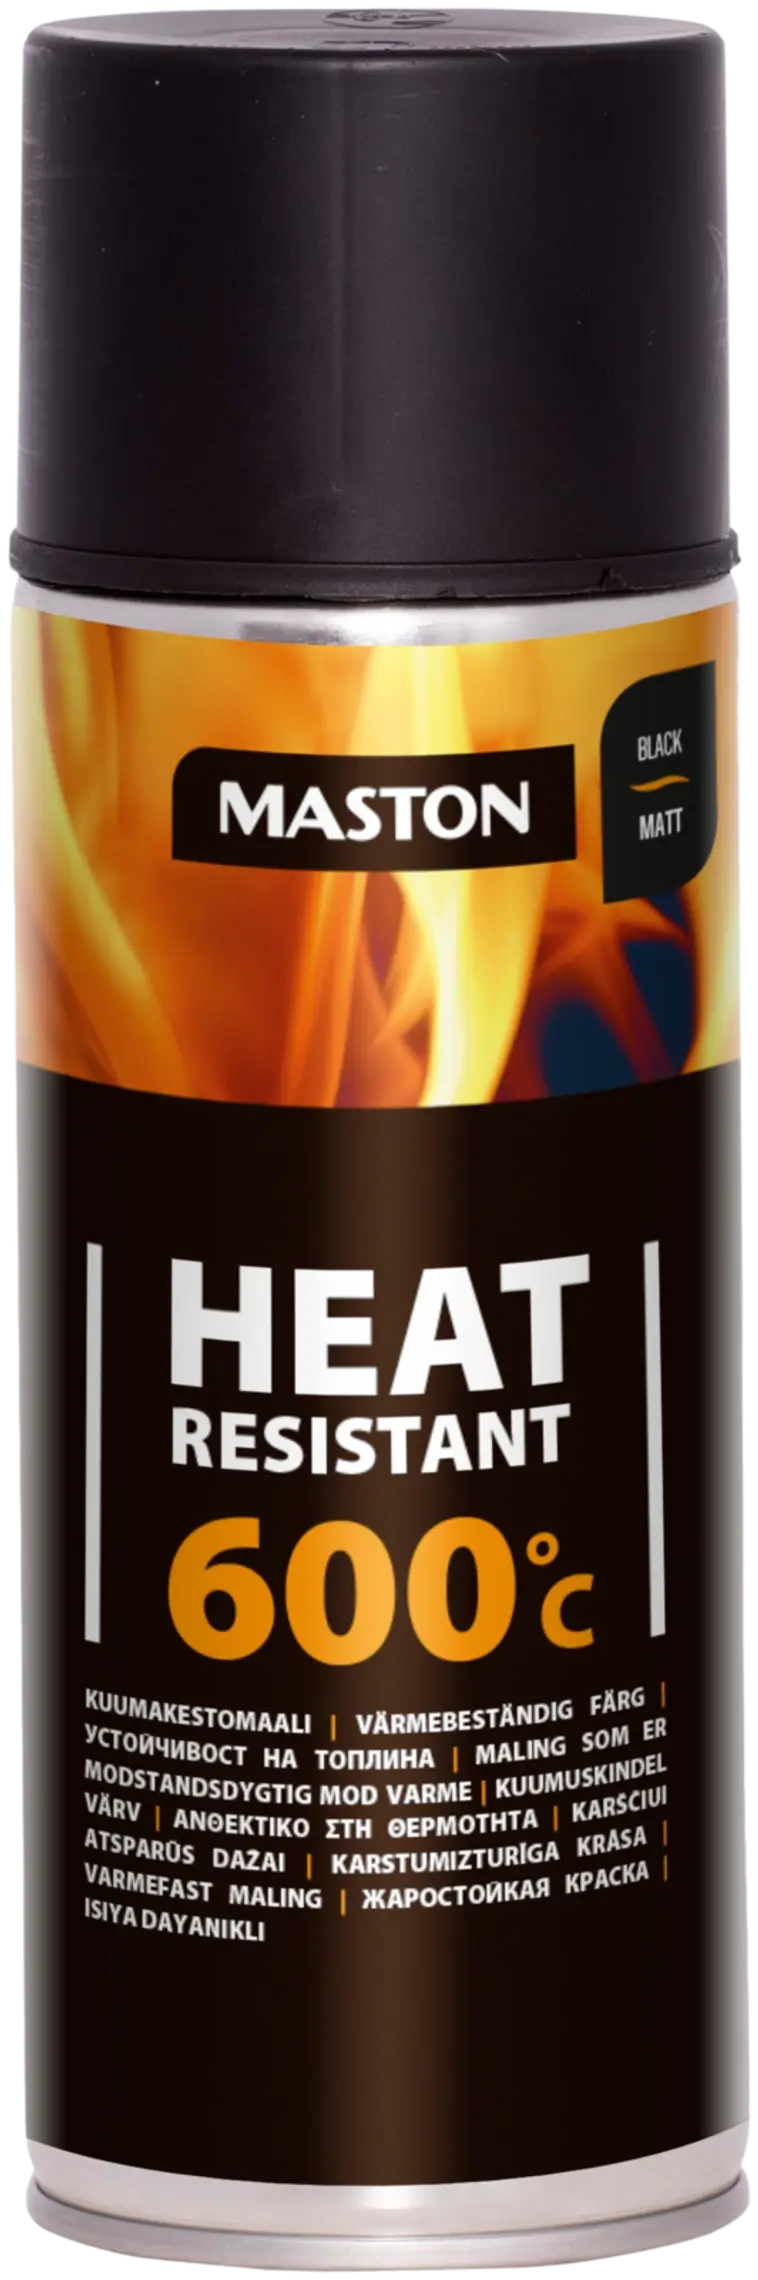 Maston kuumakestomaali 600°C spray musta 400ml | Prisma verkkokauppa